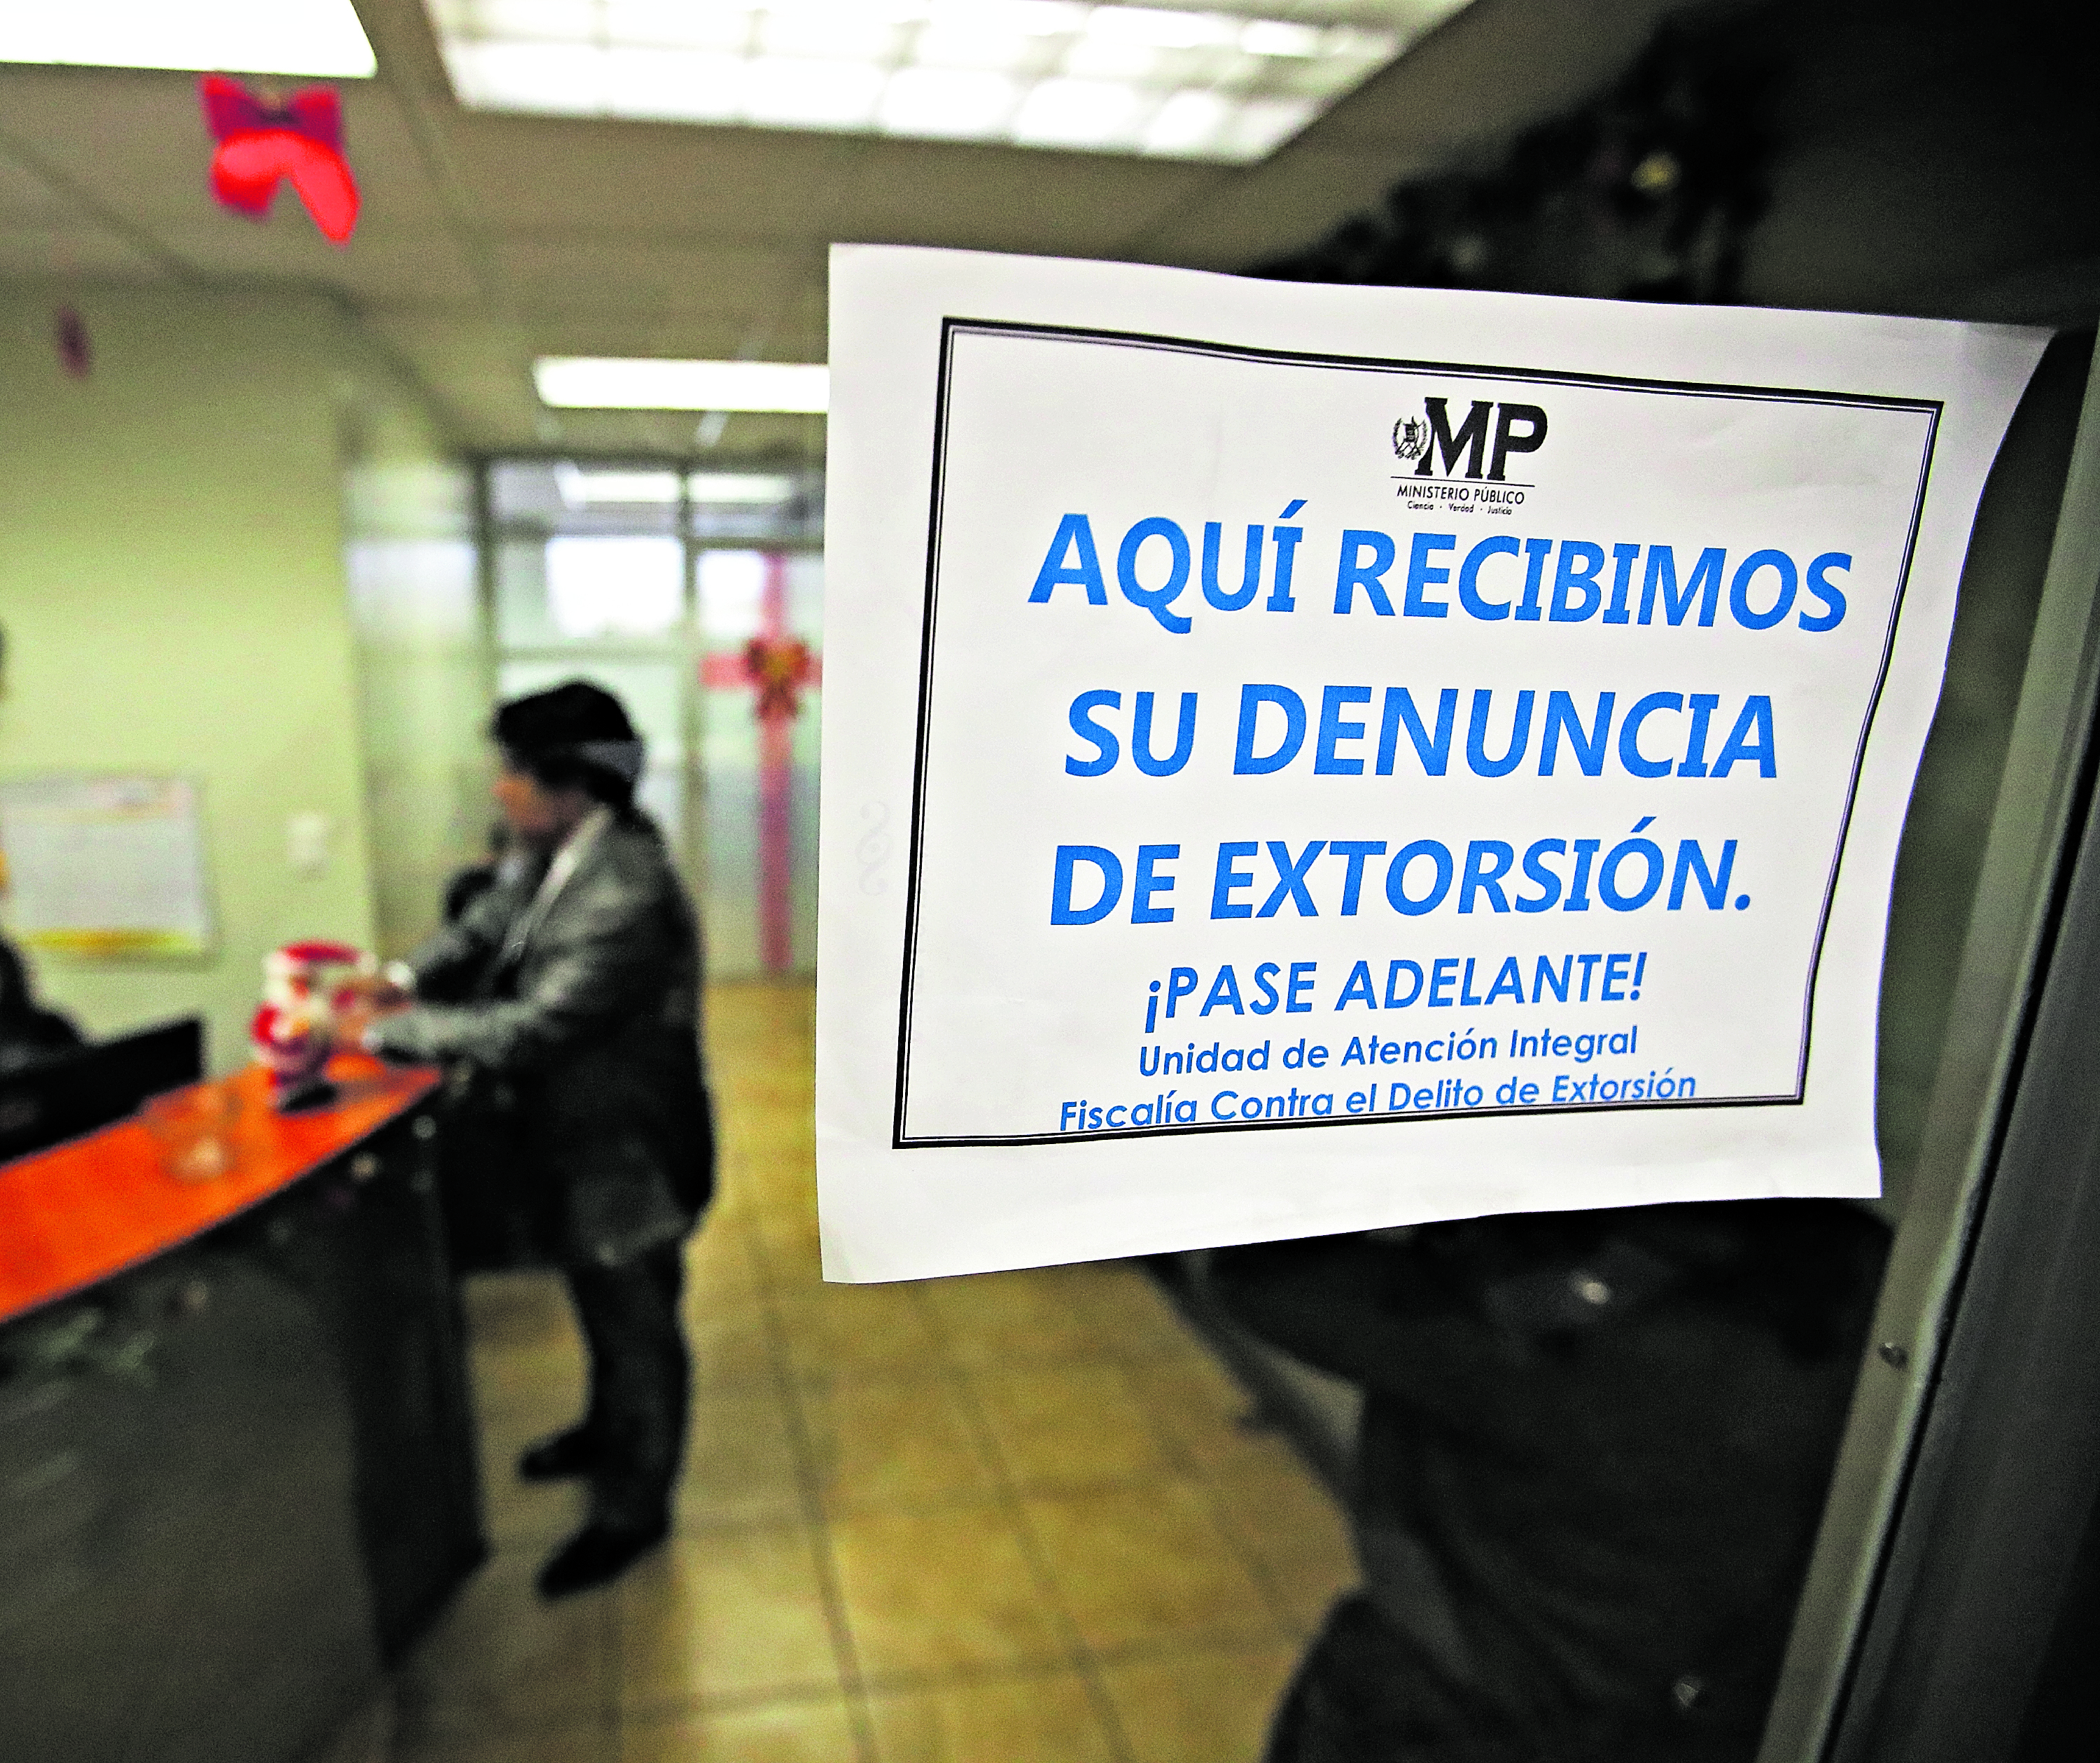 Fiscalía de sección contra las extorsiones del Ministerio Publico.

Fotografía: Paulo Raquec